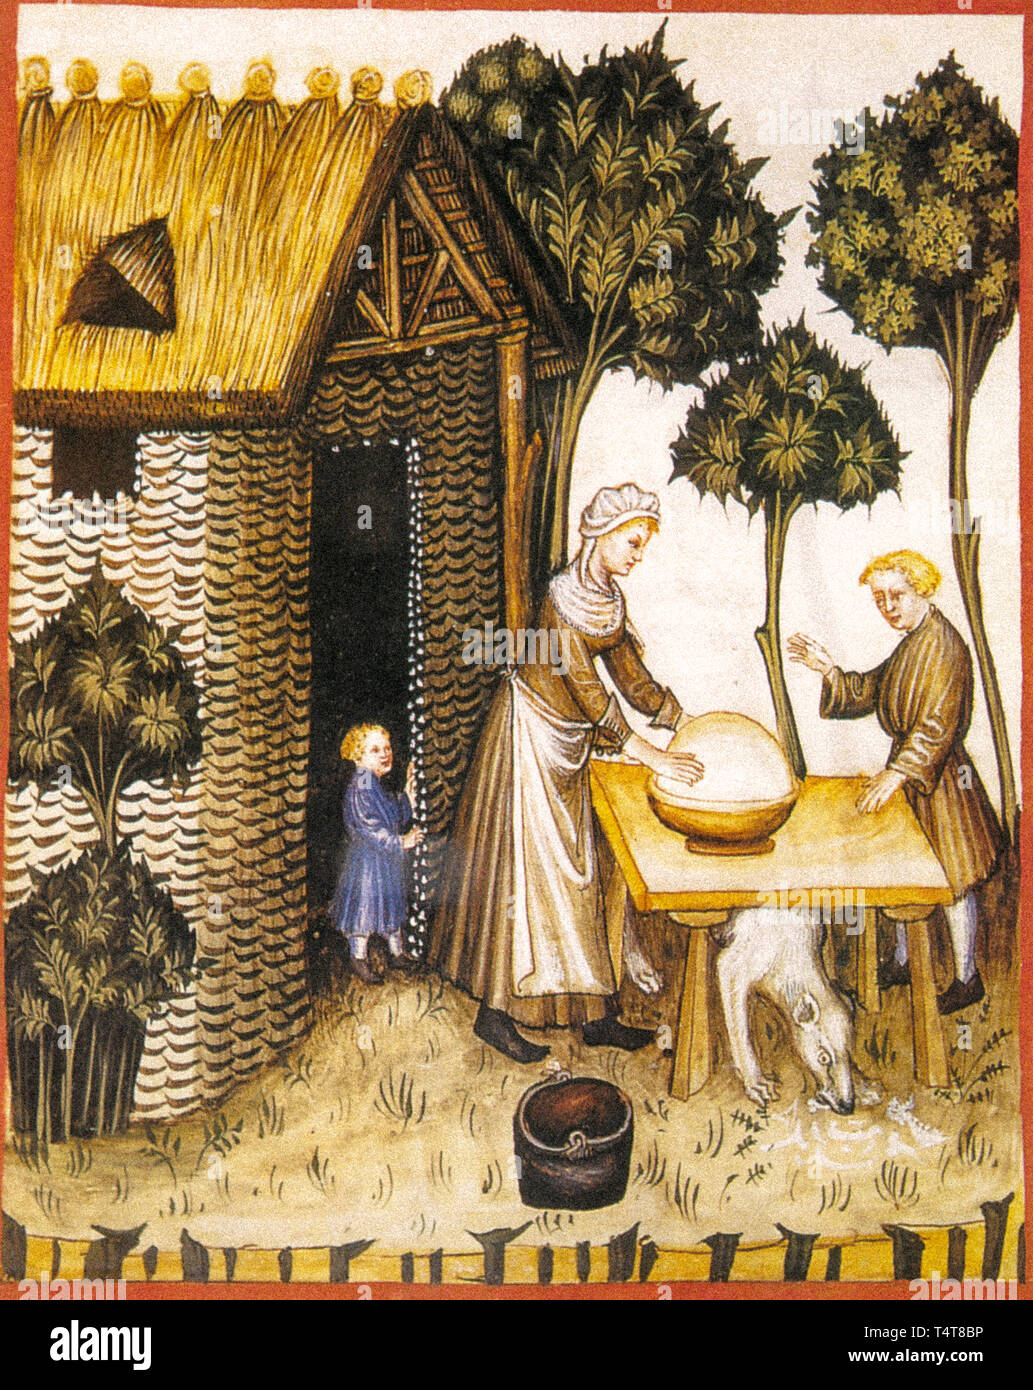 Préparation du beurre dans le Moyen Âge d'une miniature Banque D'Images